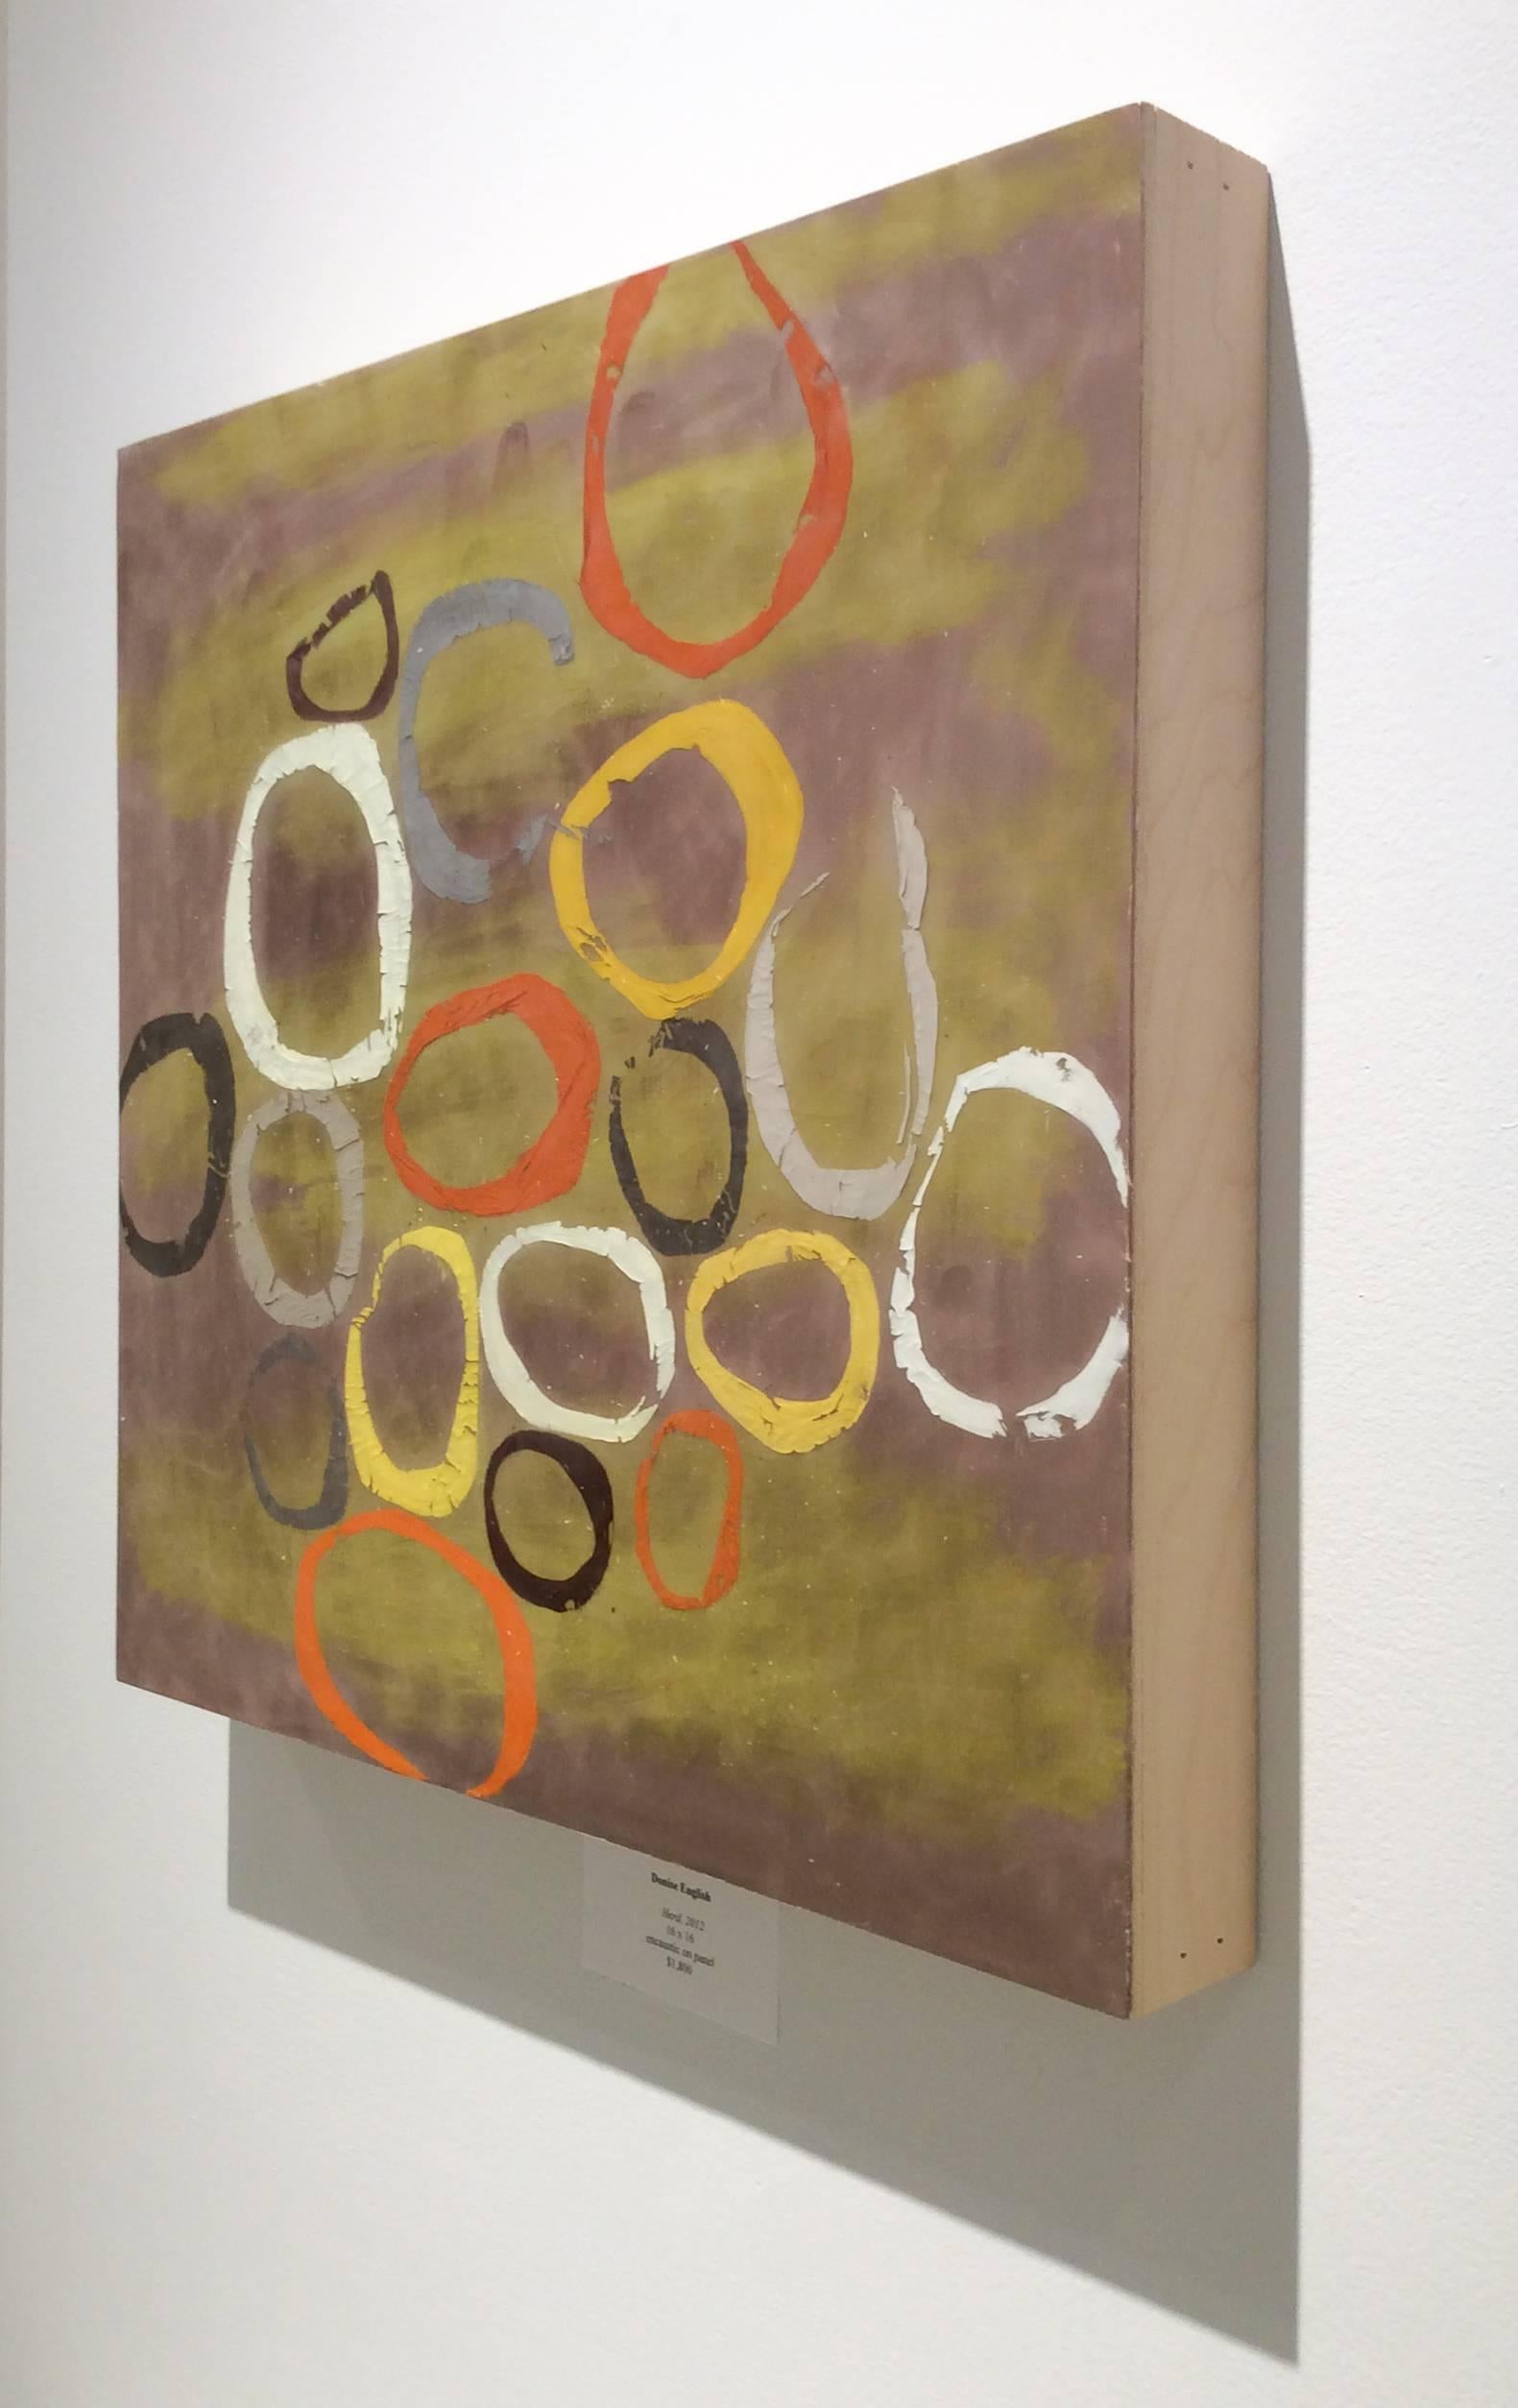 16 x 16 x 2 Zoll
enkaustik (Wachs) auf Holzplatte

HERD ist ein quadratisches, abstraktes Gemälde in reichhaltiger Enkaustik (pigmentiertes Wachs) auf Holzplatte.  Der Hintergrund ist cremefarben und olivgrün, im Vordergrund sind verspielte Ovale in